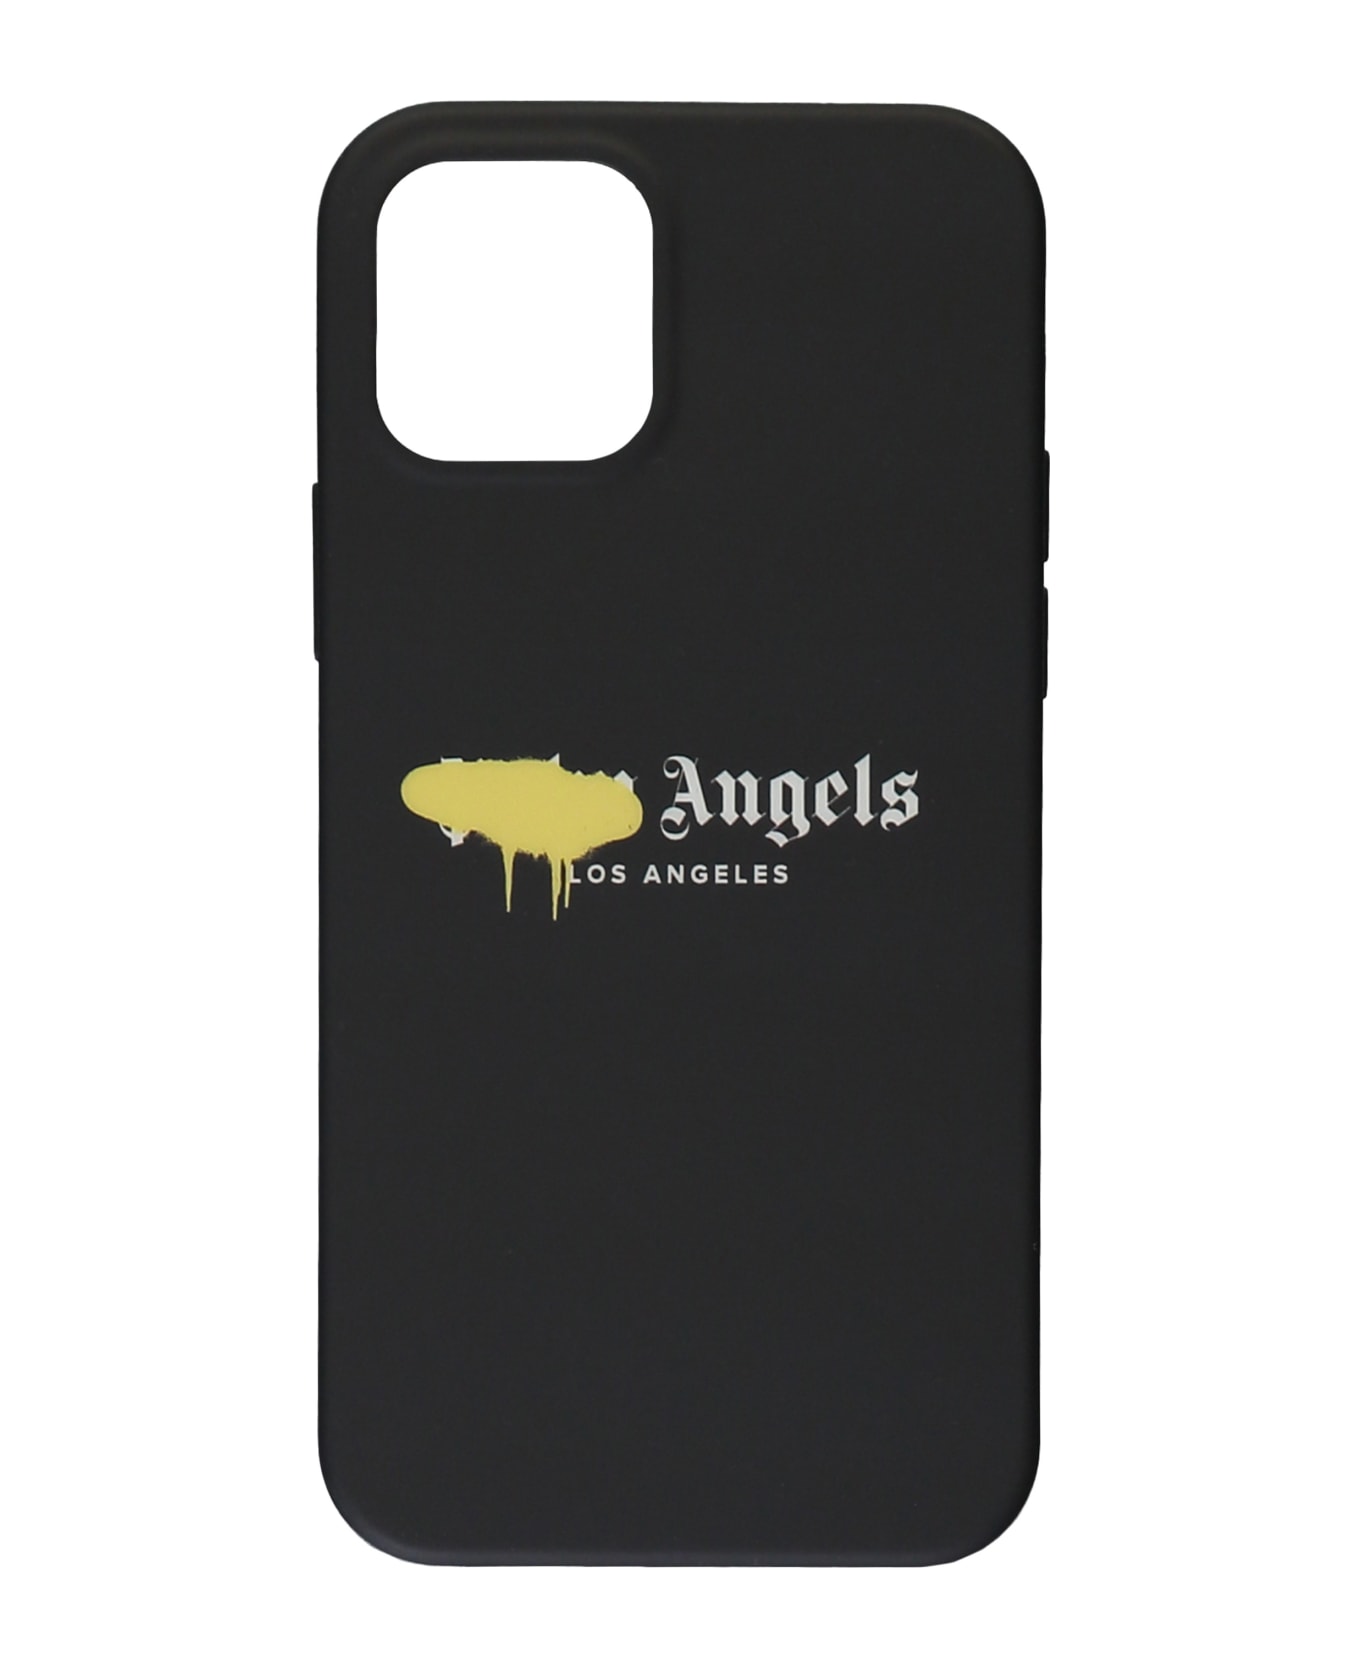 Palm Angels Logo Detail Iphone 12 Case - black デジタルアクセサリー